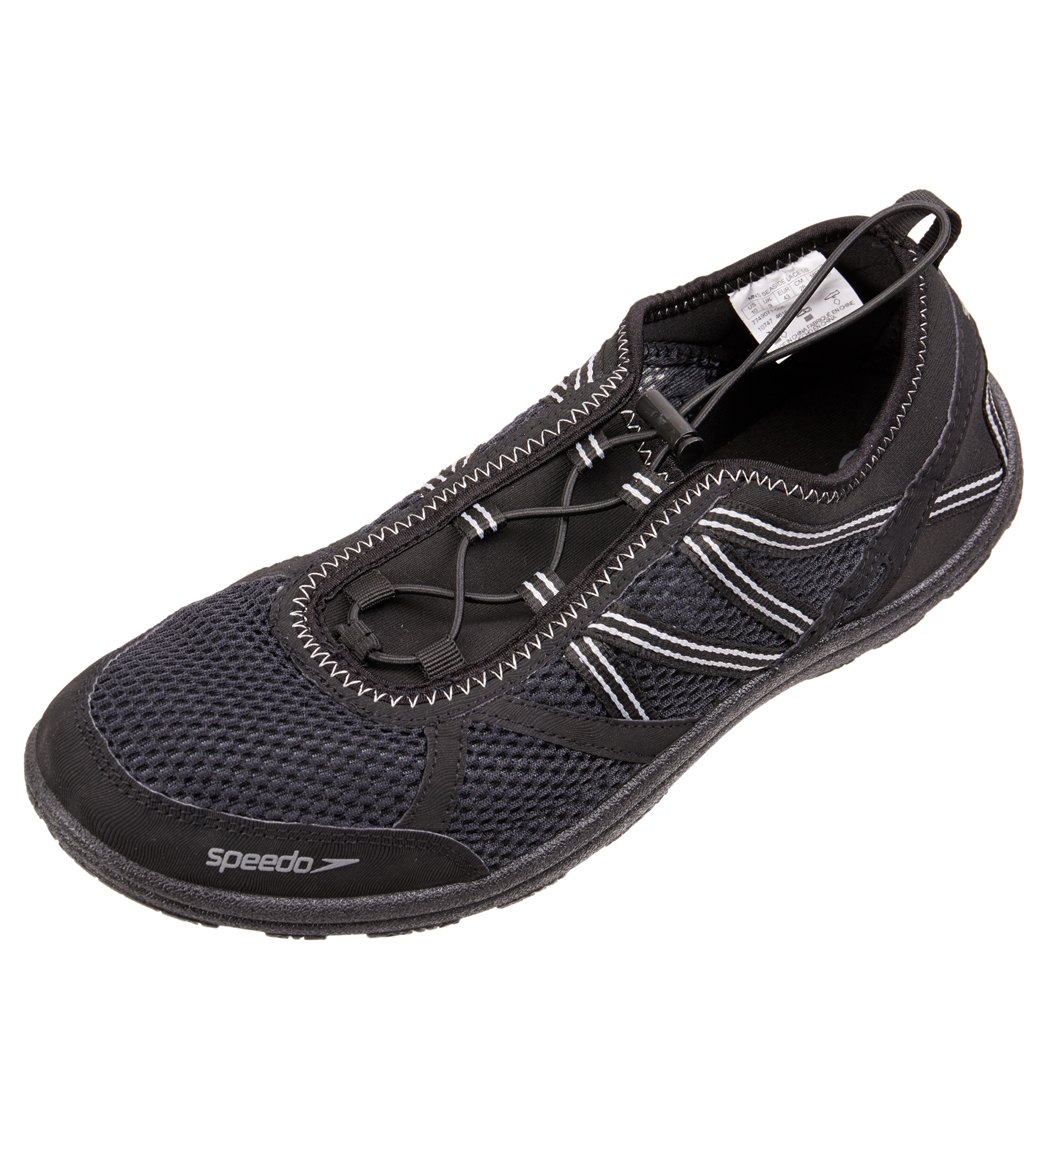 speedo men's seaside lace 5. water shoe